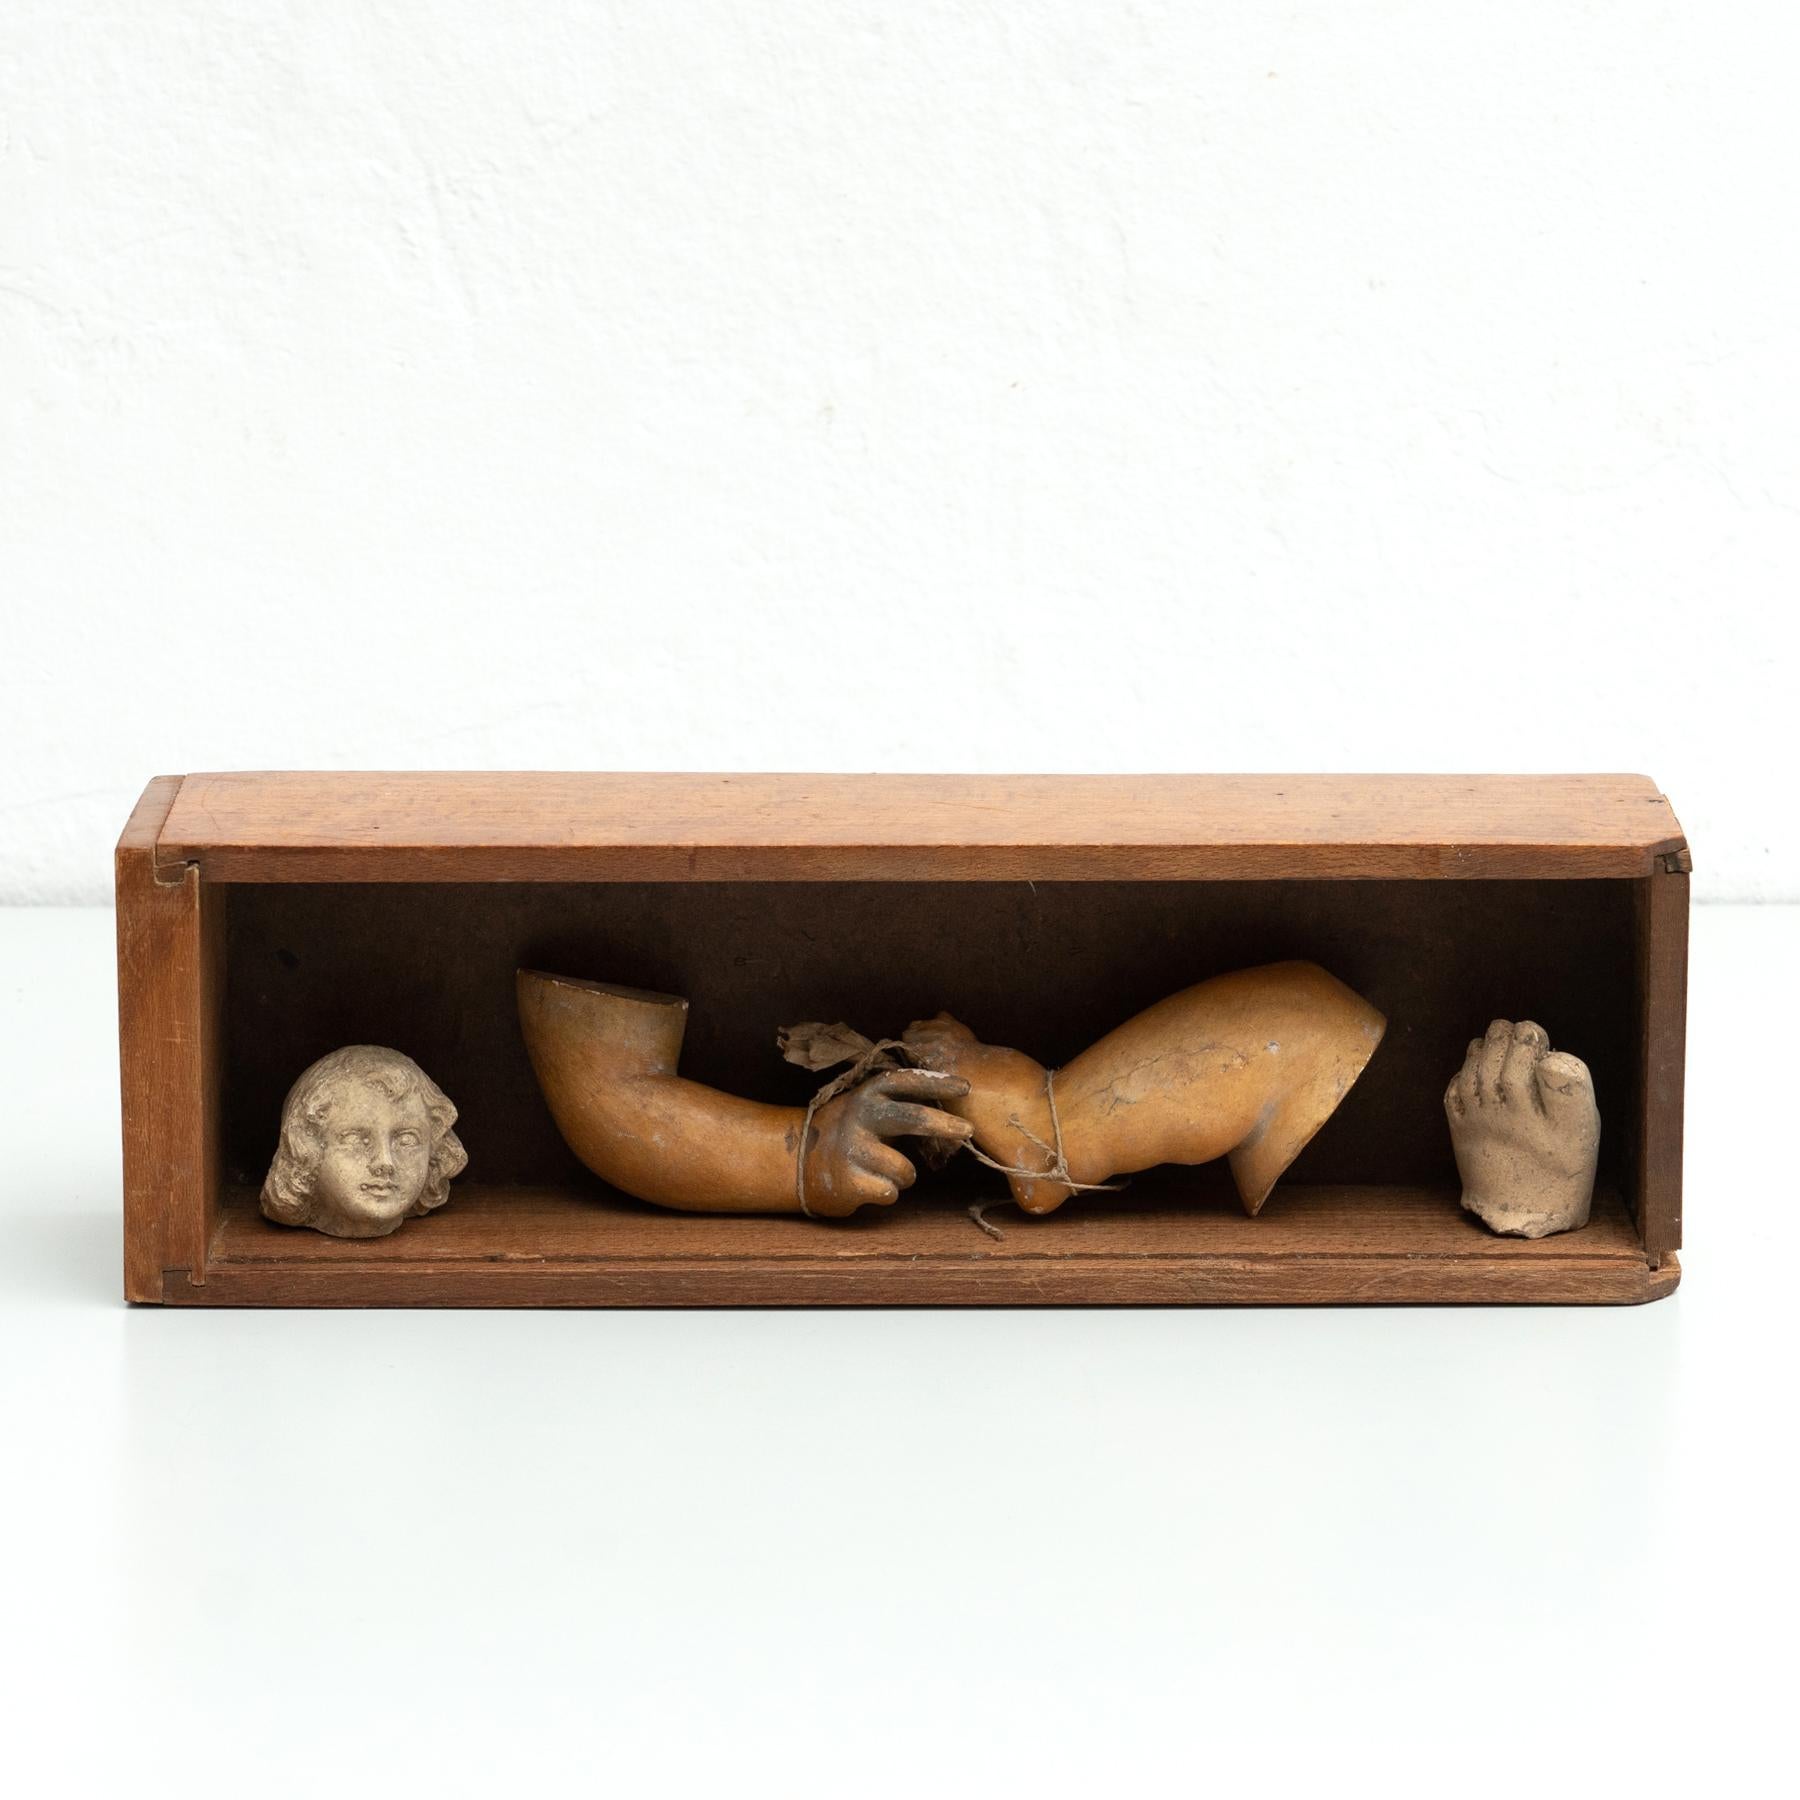 Kuriositätenkabinett mit Gipsfiguren und -teilen in einer Holzschublade.

Hergestellt in einem traditionellen katalanischen Atelier in Olot, Spanien, um 1950.

Olot hat eine lange Tradition in der Herstellung von Skulpturen und religiösen